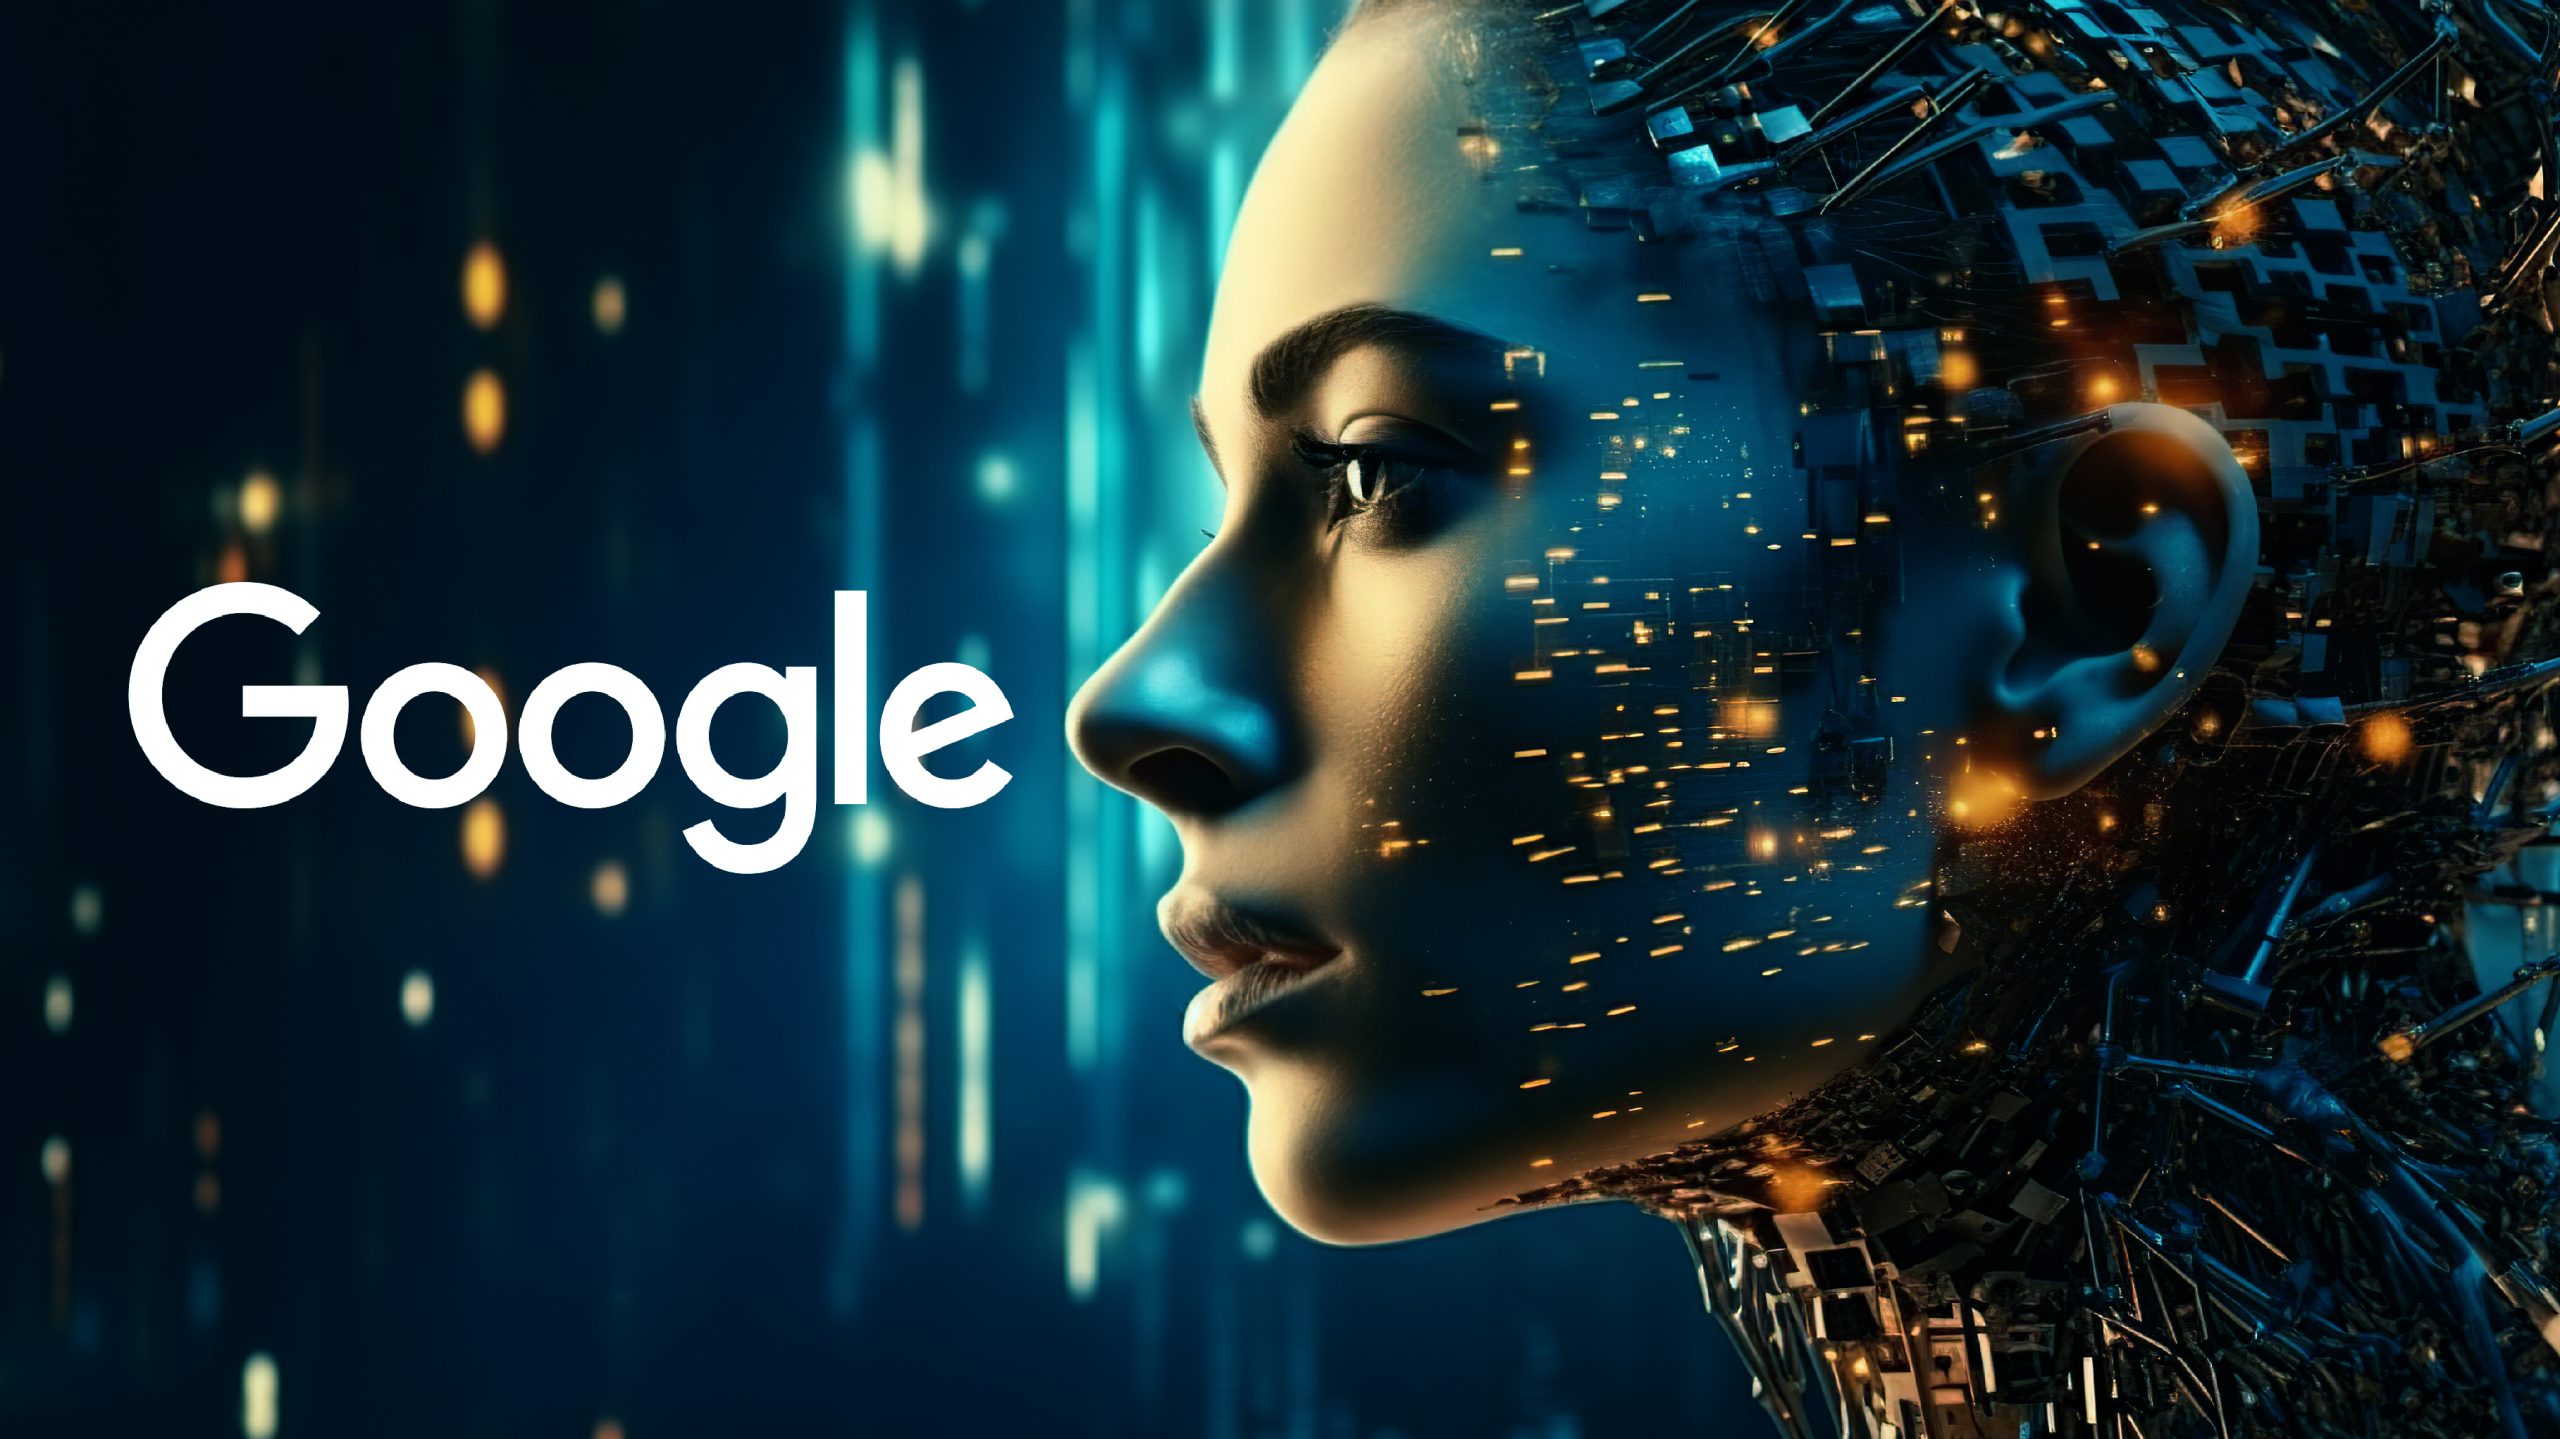 گوگل مولز AI سے بہتر تلاش کے لیے چارج کر رہا ہے: آپ کو کیا جاننے کی ضرورت ہے۔